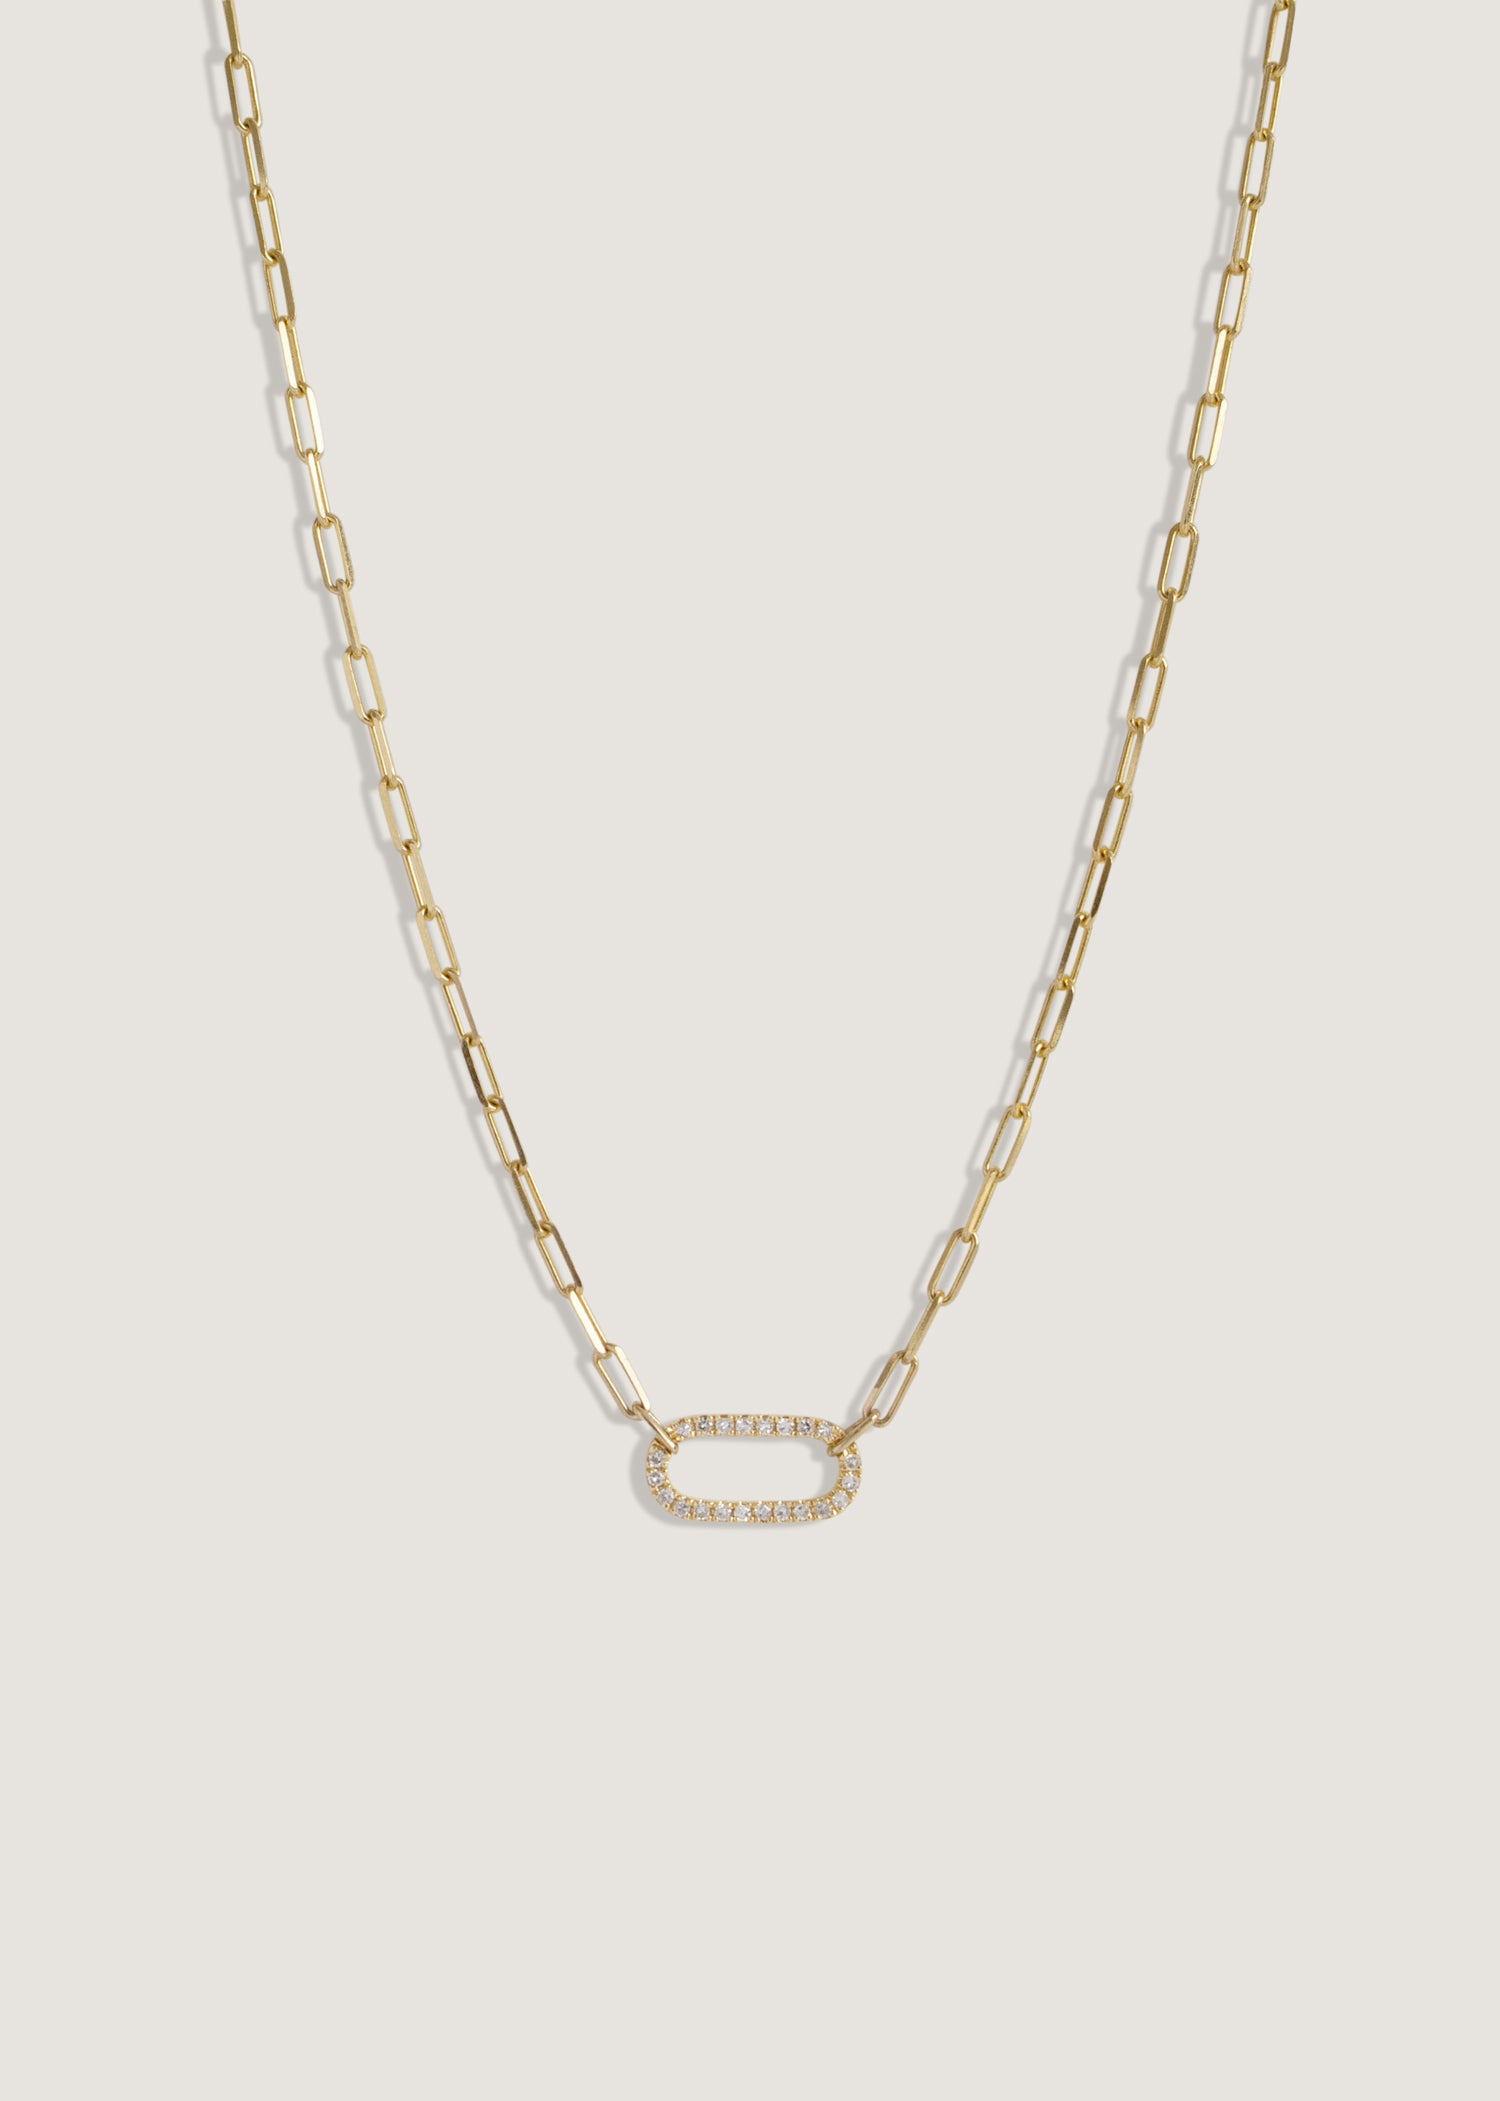 alt="Pavé Diamond Link Chain Necklace"